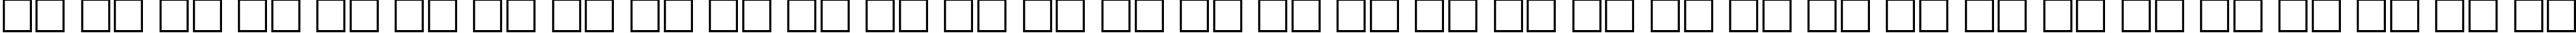 Пример написания русского алфавита шрифтом AdineKirnberg Regular